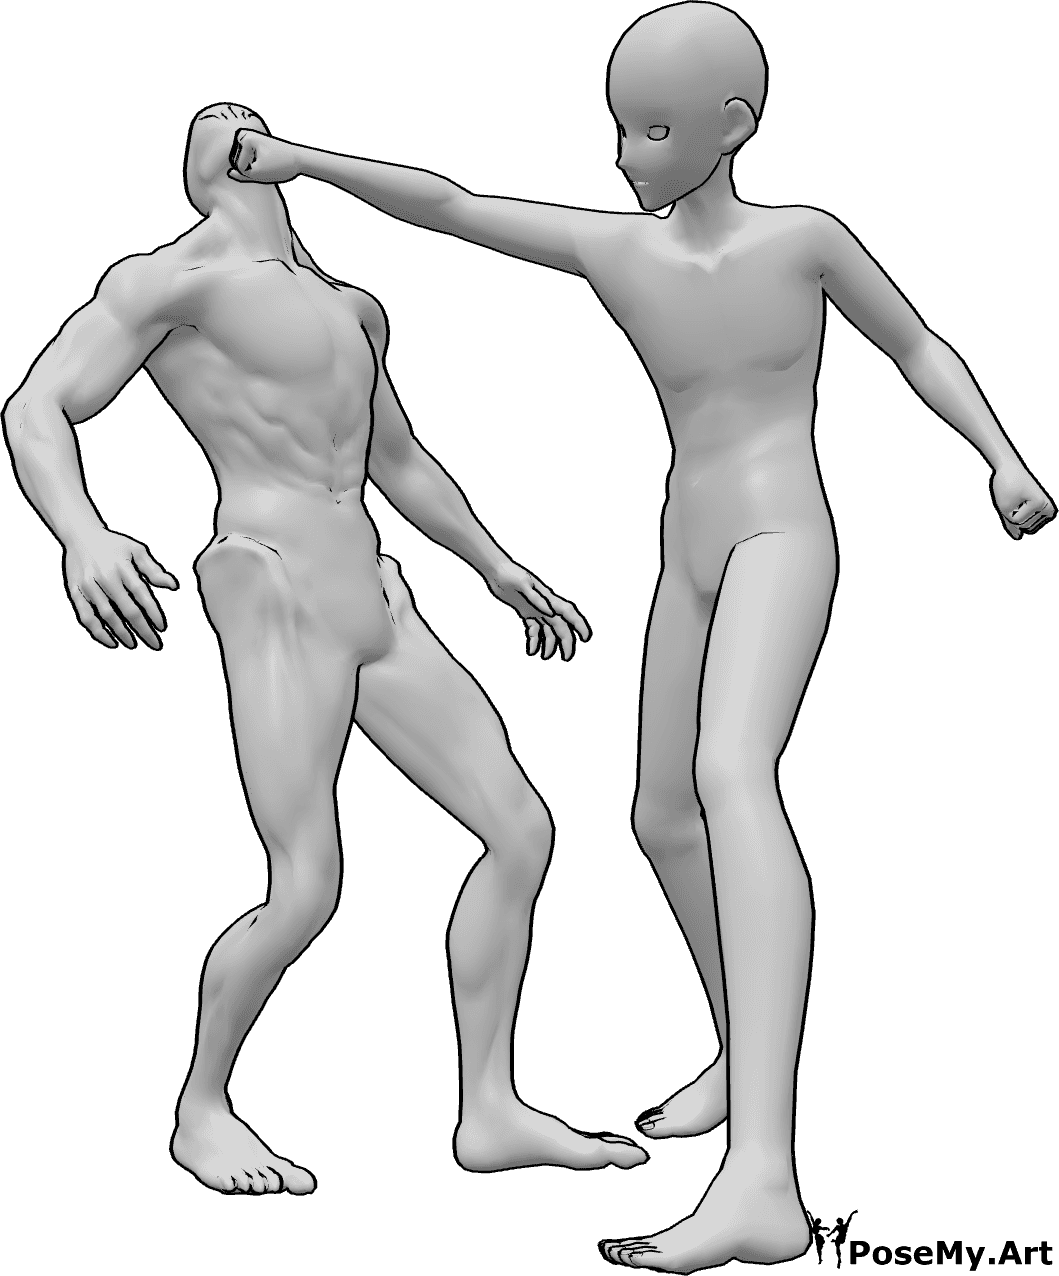 Referencia de poses- Anime masculino puñetazo pose - Hombre anime está golpeando al enemigo en la cabeza con su mano derecha